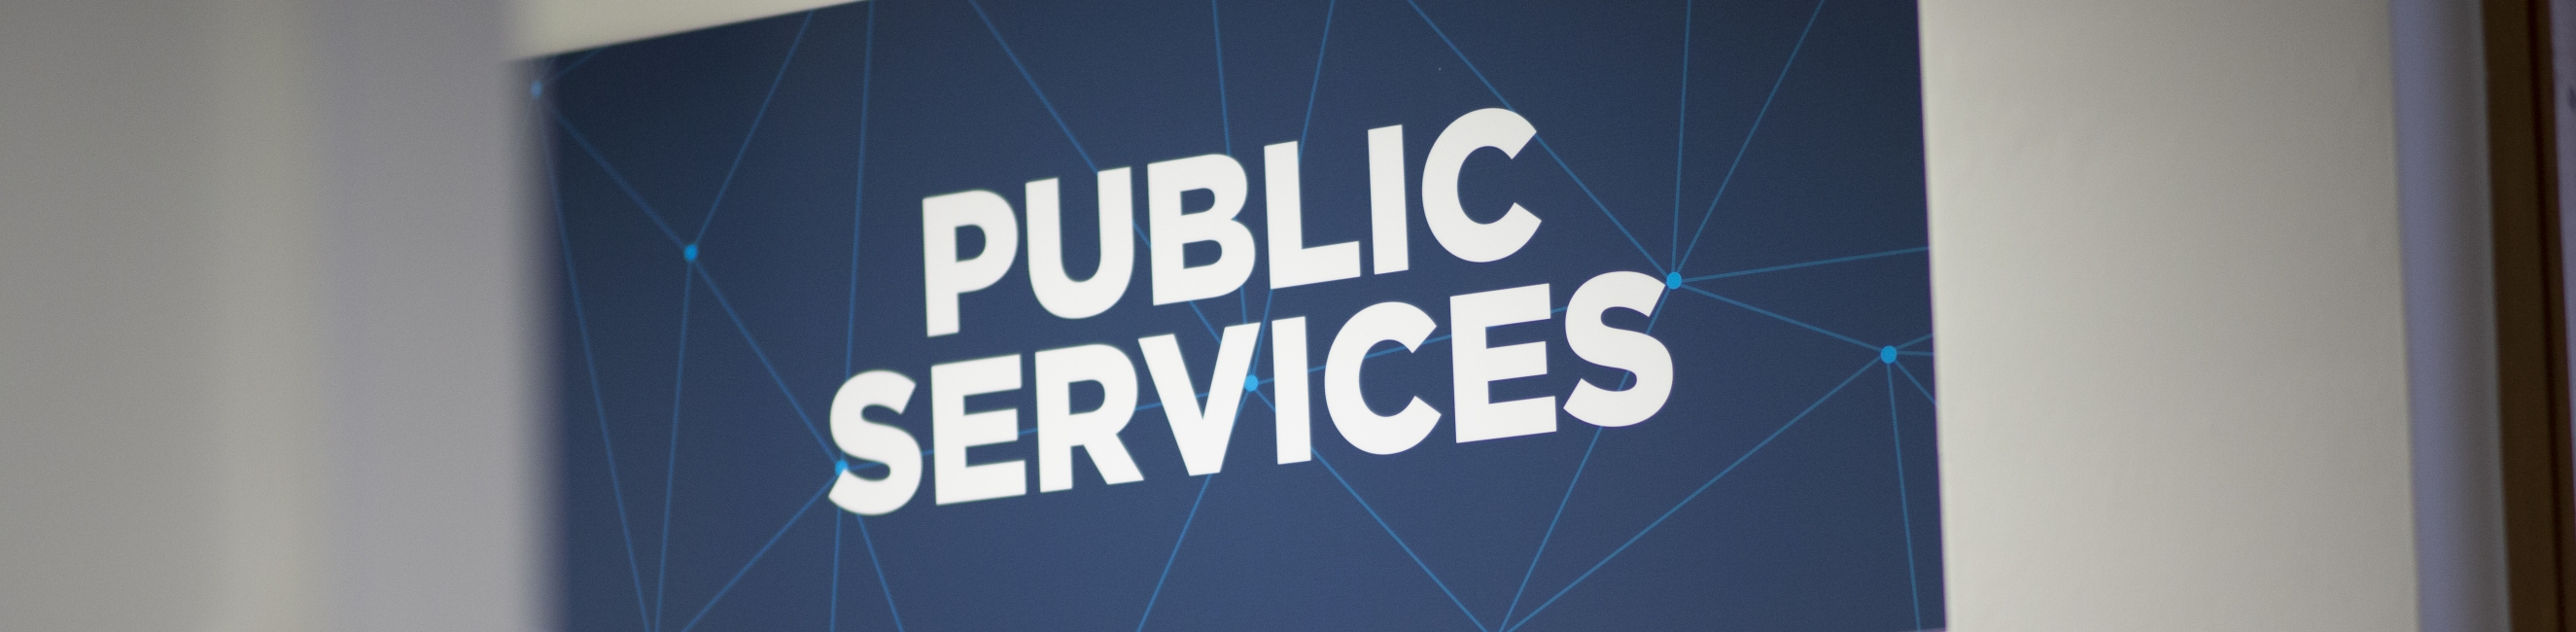 public services signage